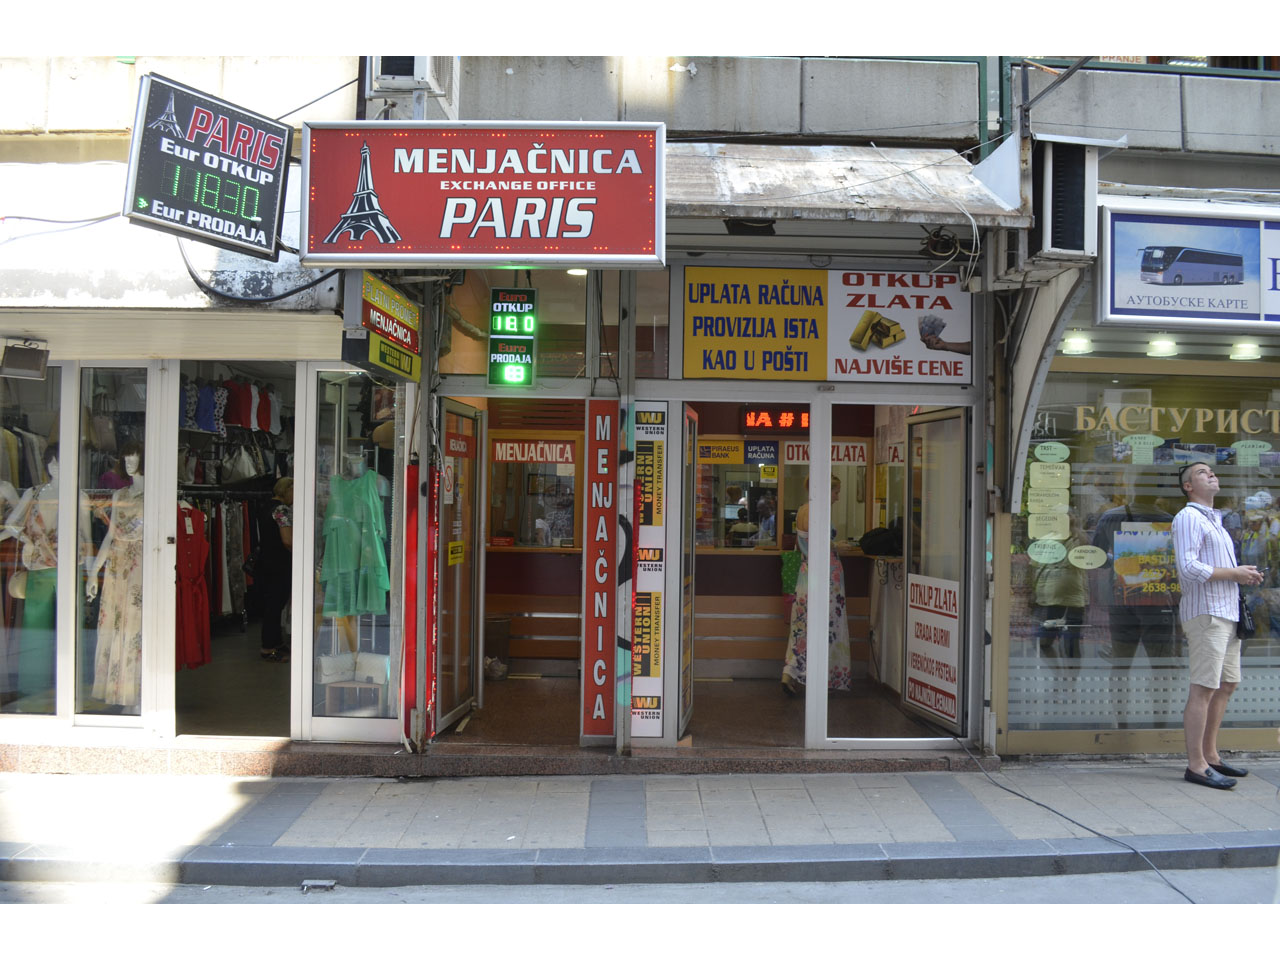 PARIS EXCHANGE OFFICE Exchange office Beograd